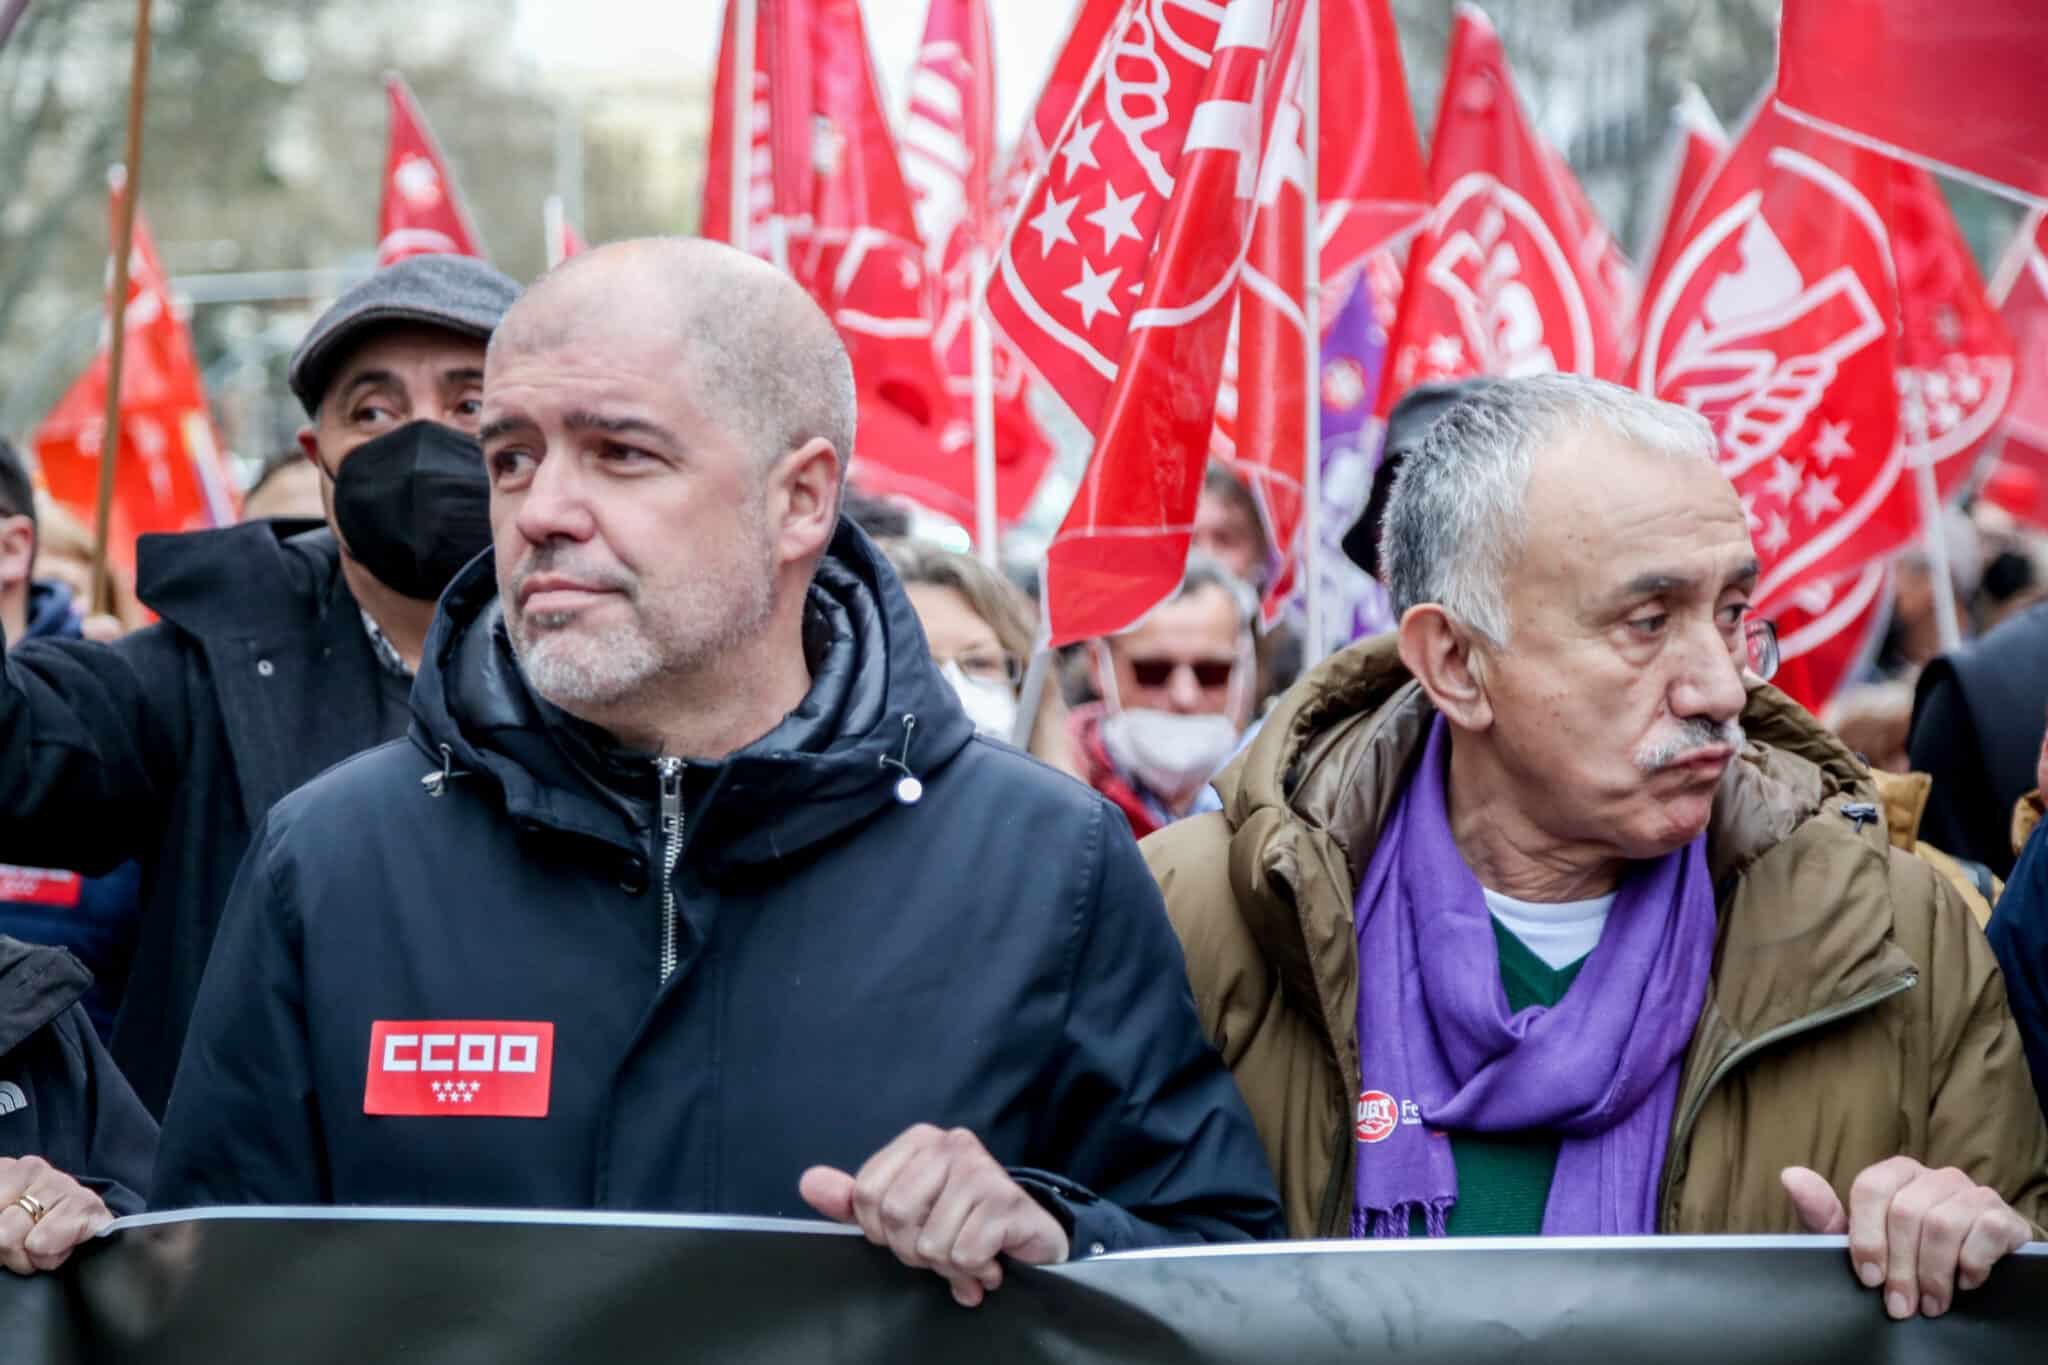 El secretario general de CCOO, Unai Sordo (izquierda), y el secretario general de UGT, Pepe Álvarez, durante una manifestación contra los altos precios de la energía eléctrica en Madrid.